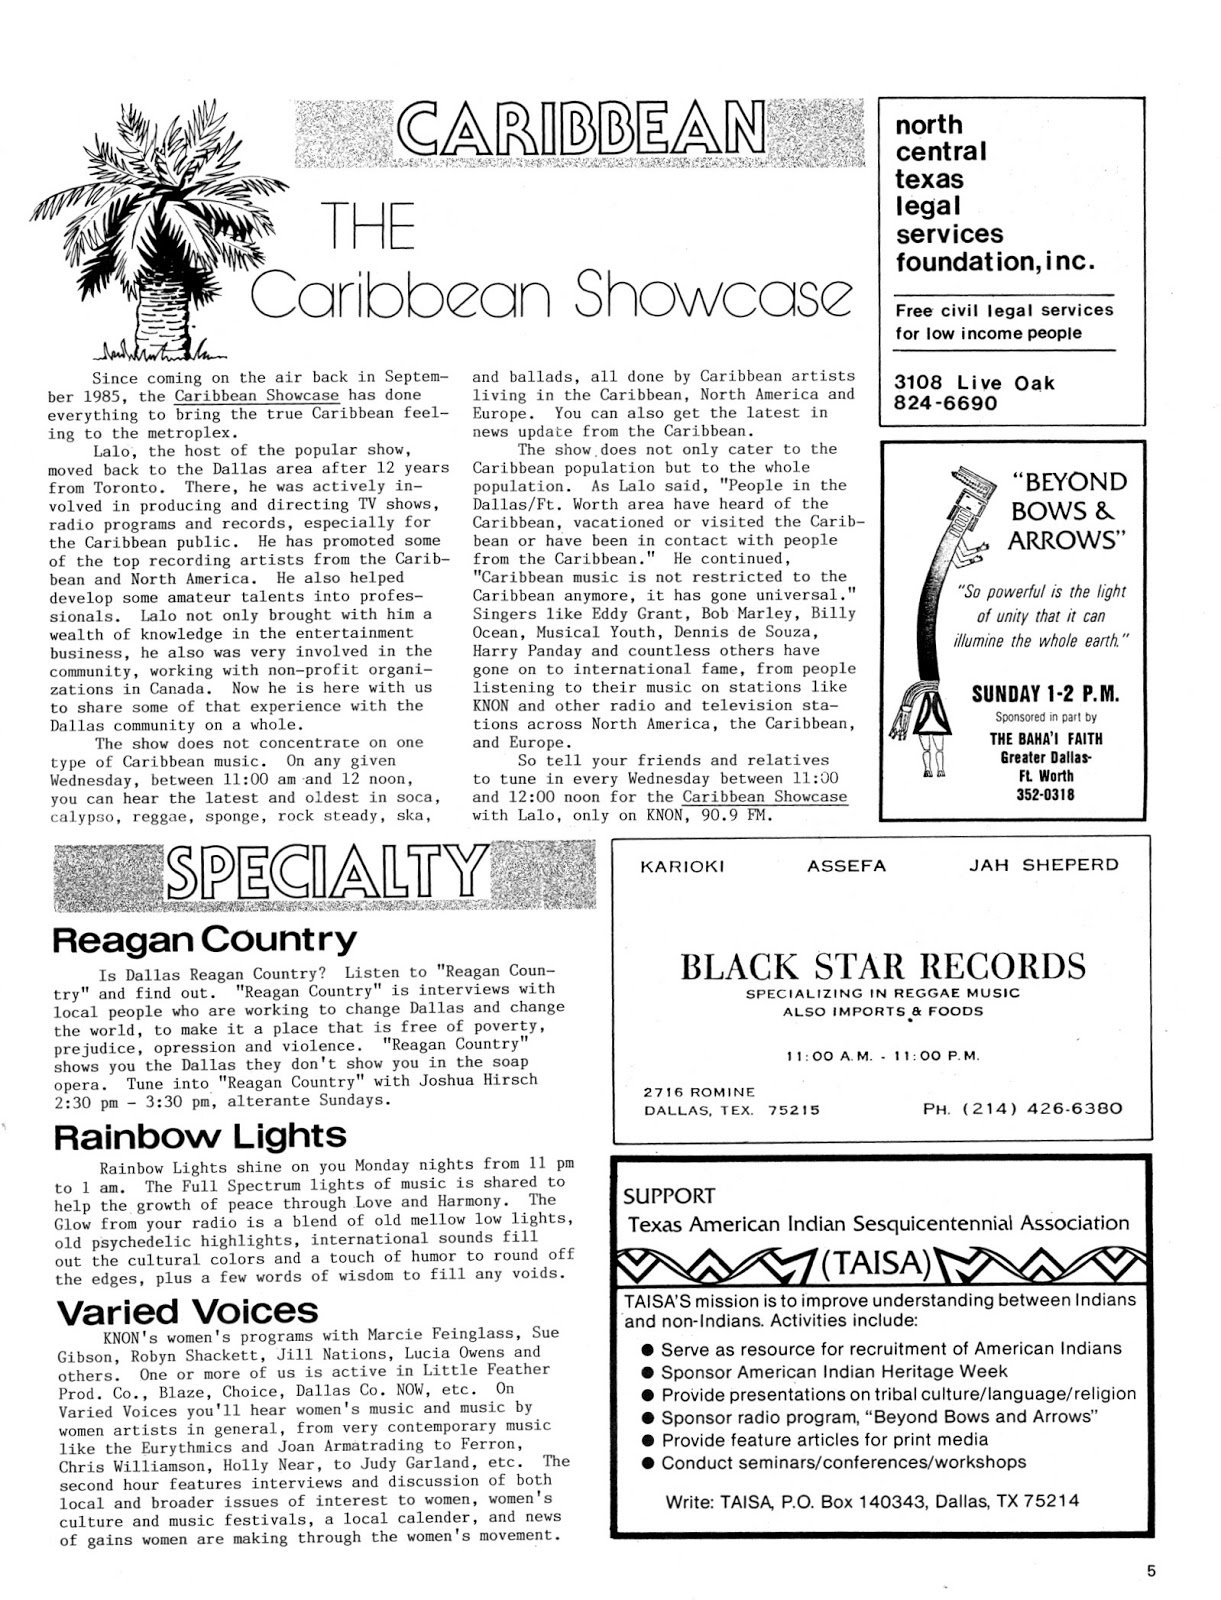 scrapbook-1986-issue-3-p05